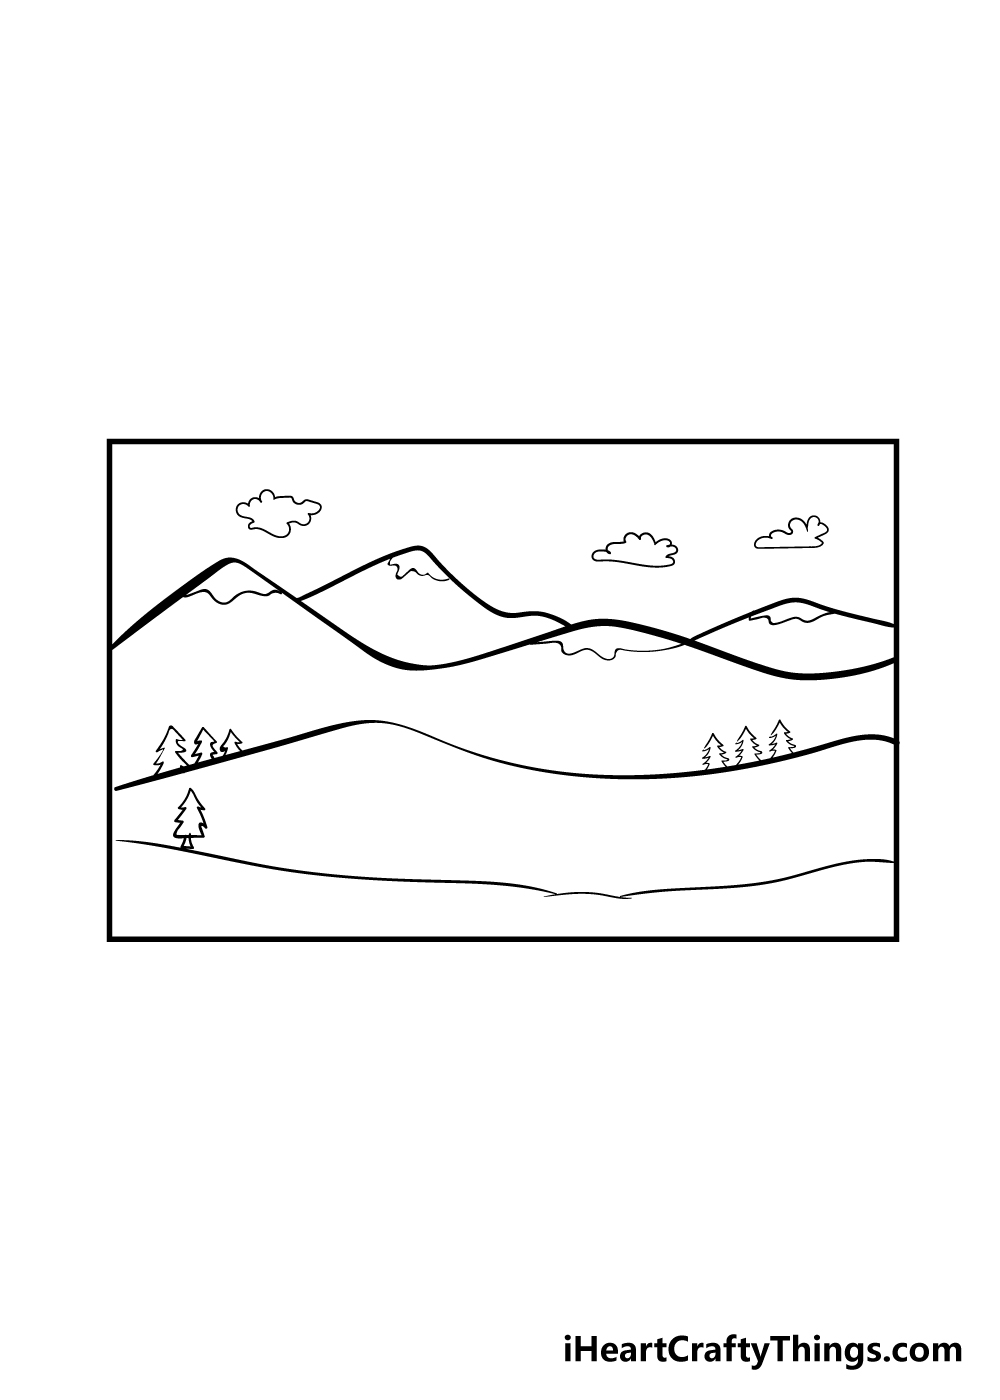 mountain 6 - Hướng dẫn cách vẽ núi đơn giản với 7 bước cơ bản